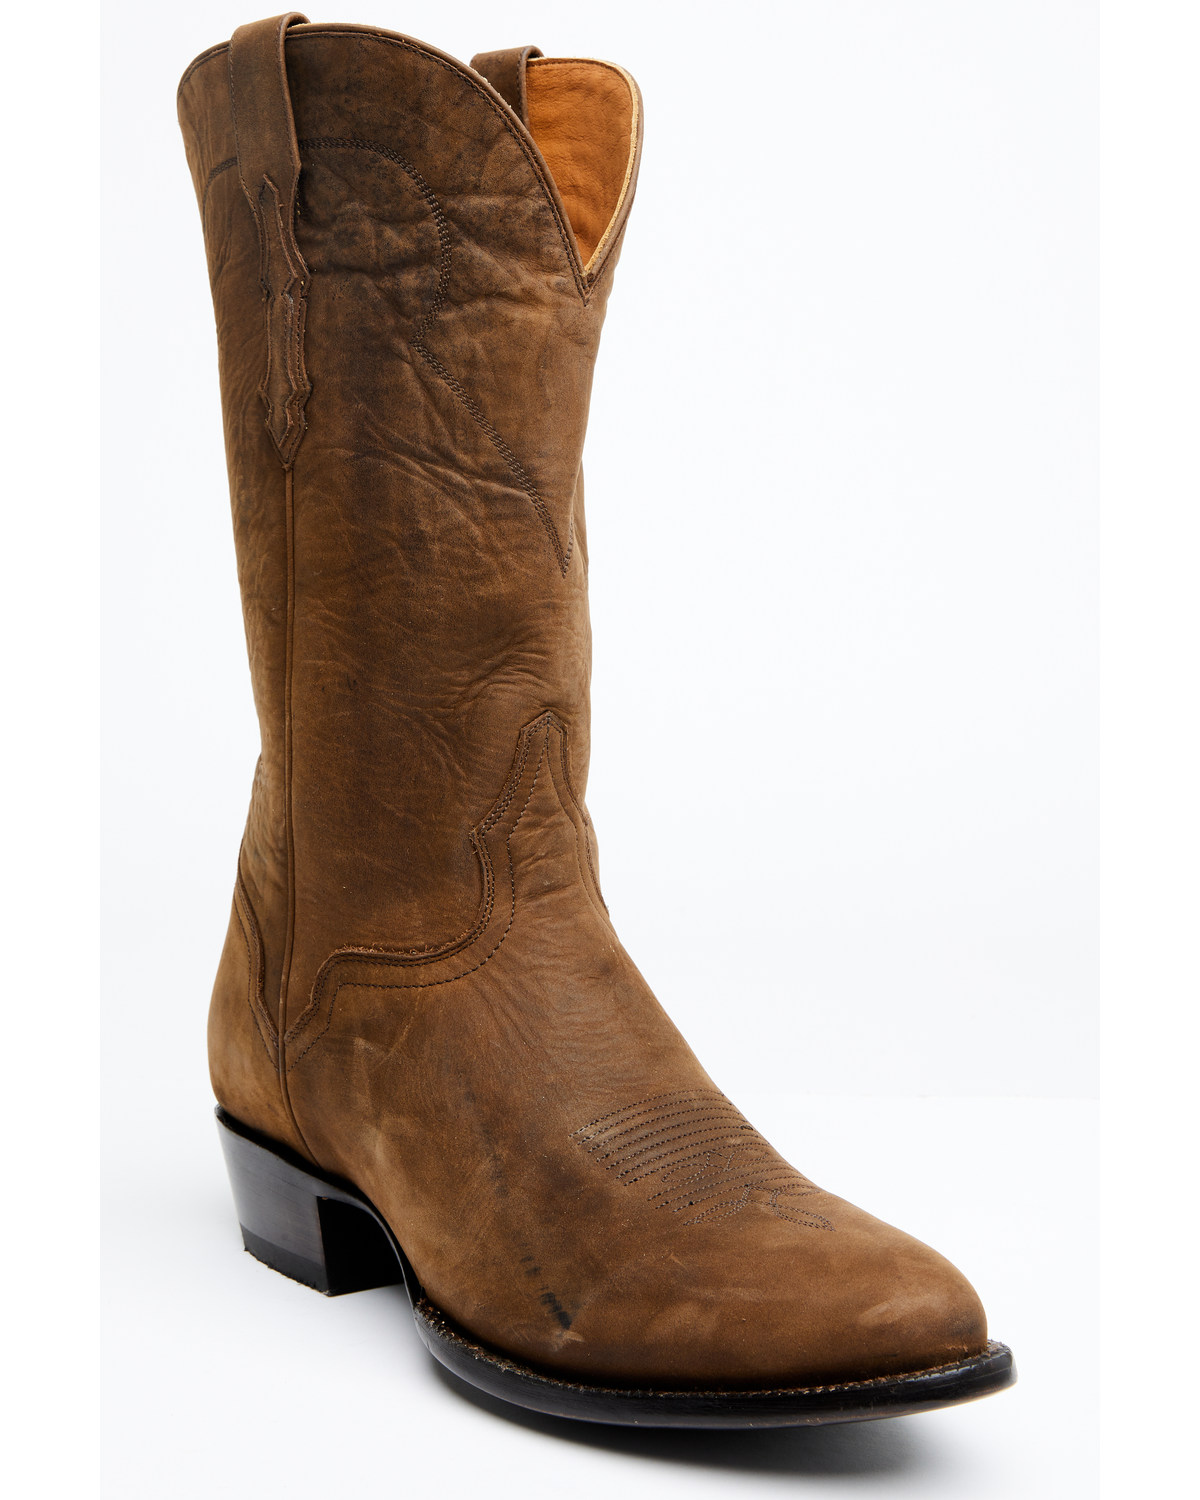 El Dorado Men's Brown Western Boots - Round Toe